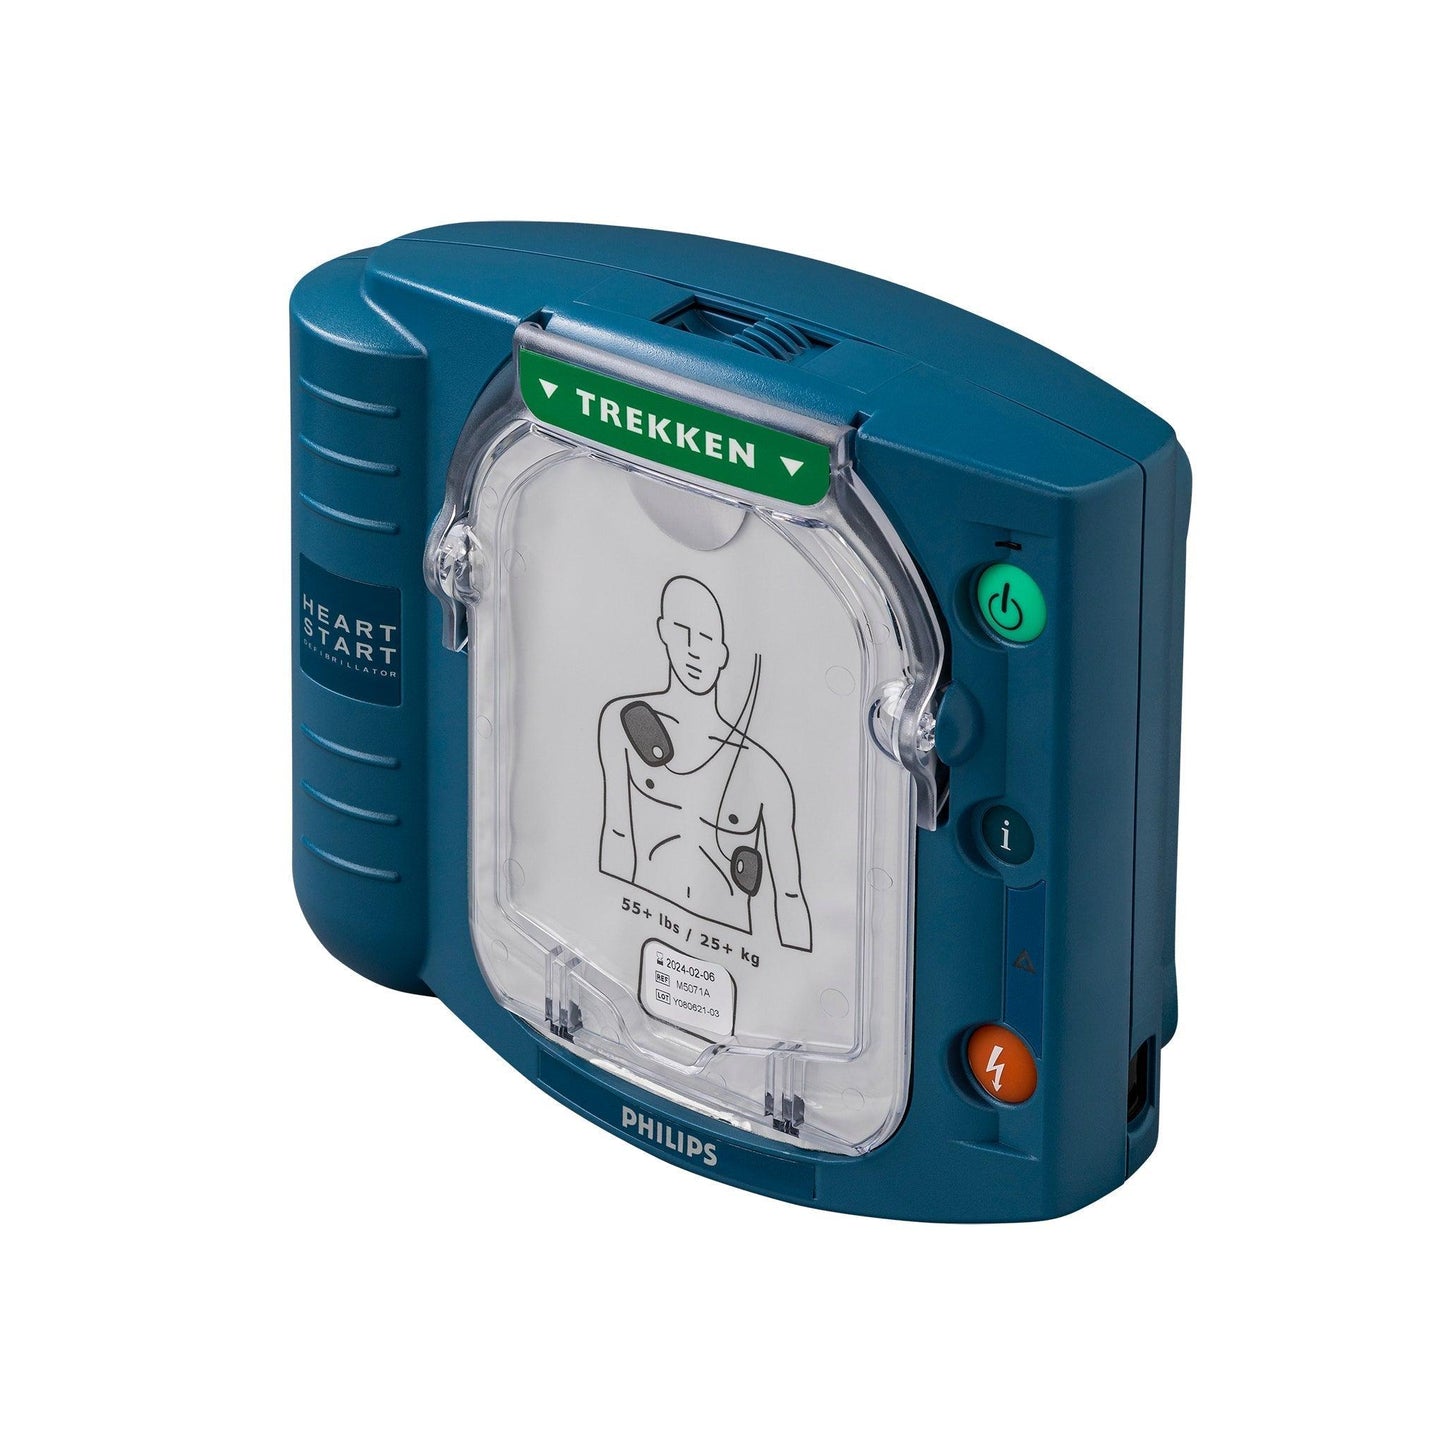 Philips Heartstart - HS1 AED body - exclusief batterij & elektroden - ProCardio - M5066A_NL_Body